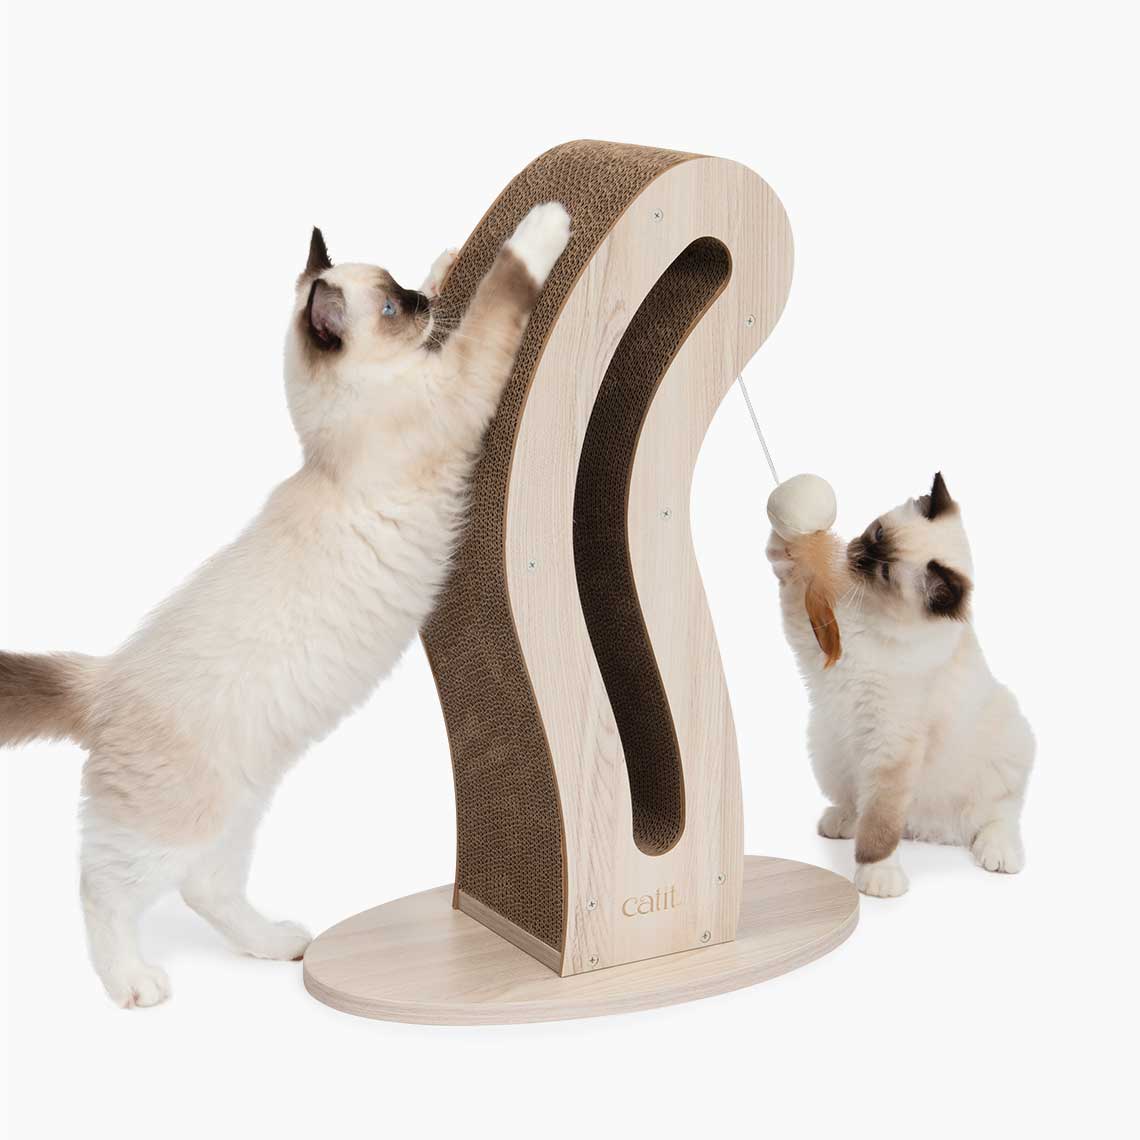 2 kittens spelen met de PIXI Scratcher in de vorm van een kattenstaart